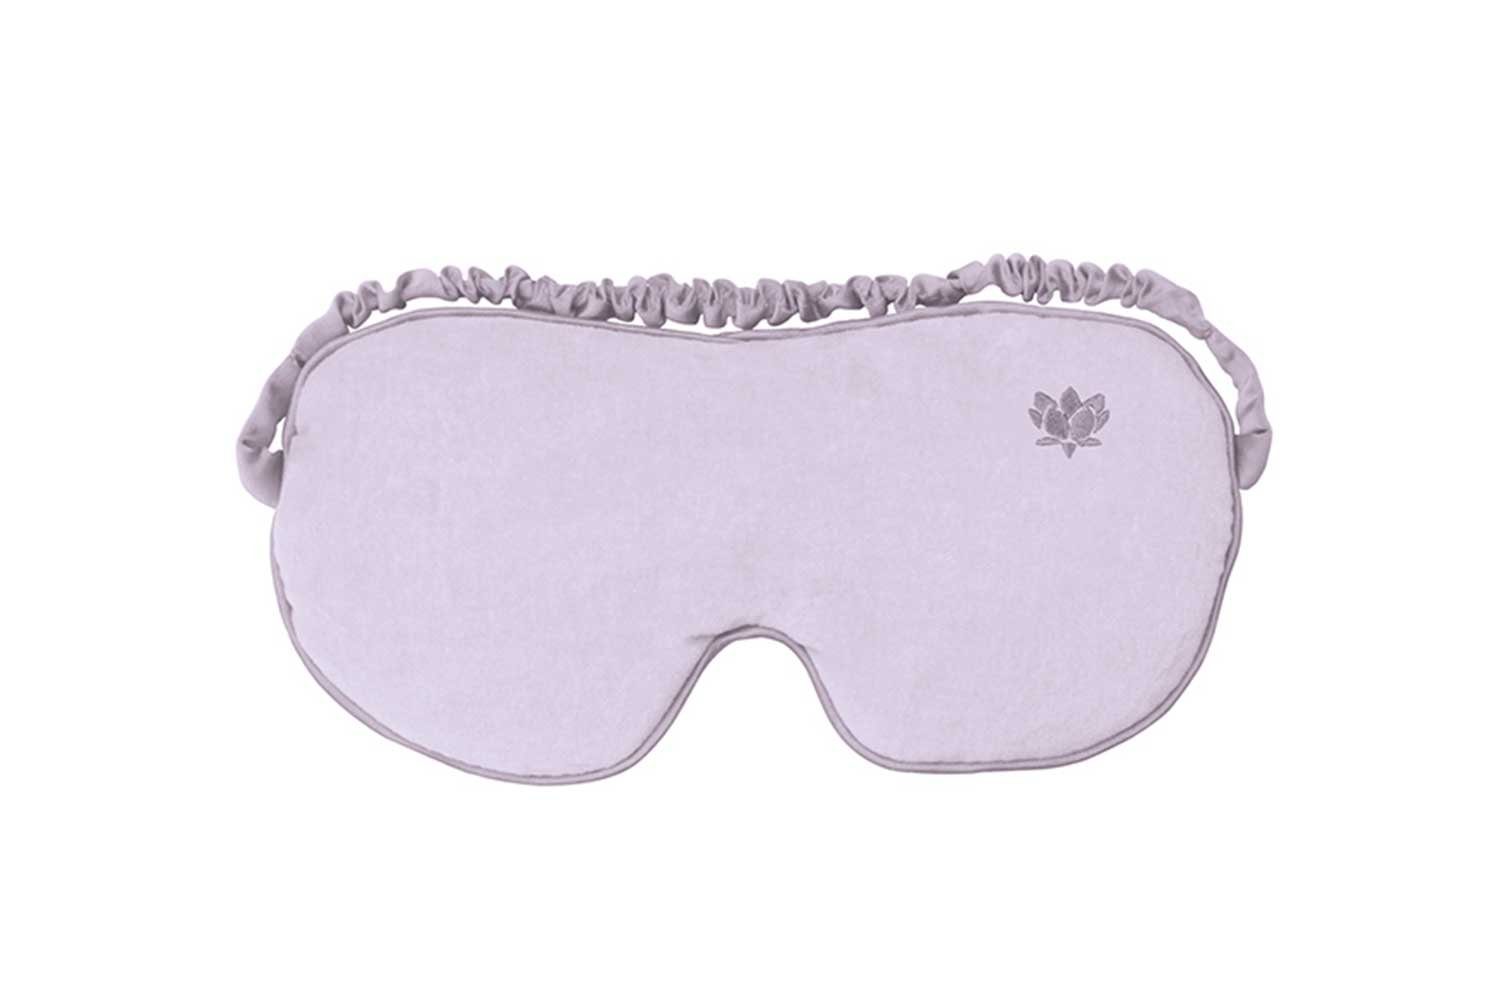 Lavendelduft Augenmaske Augenmaske Marvida Leinsamenfüllung Care und beruhigende »SILKIE« Augenmaske mit violett,